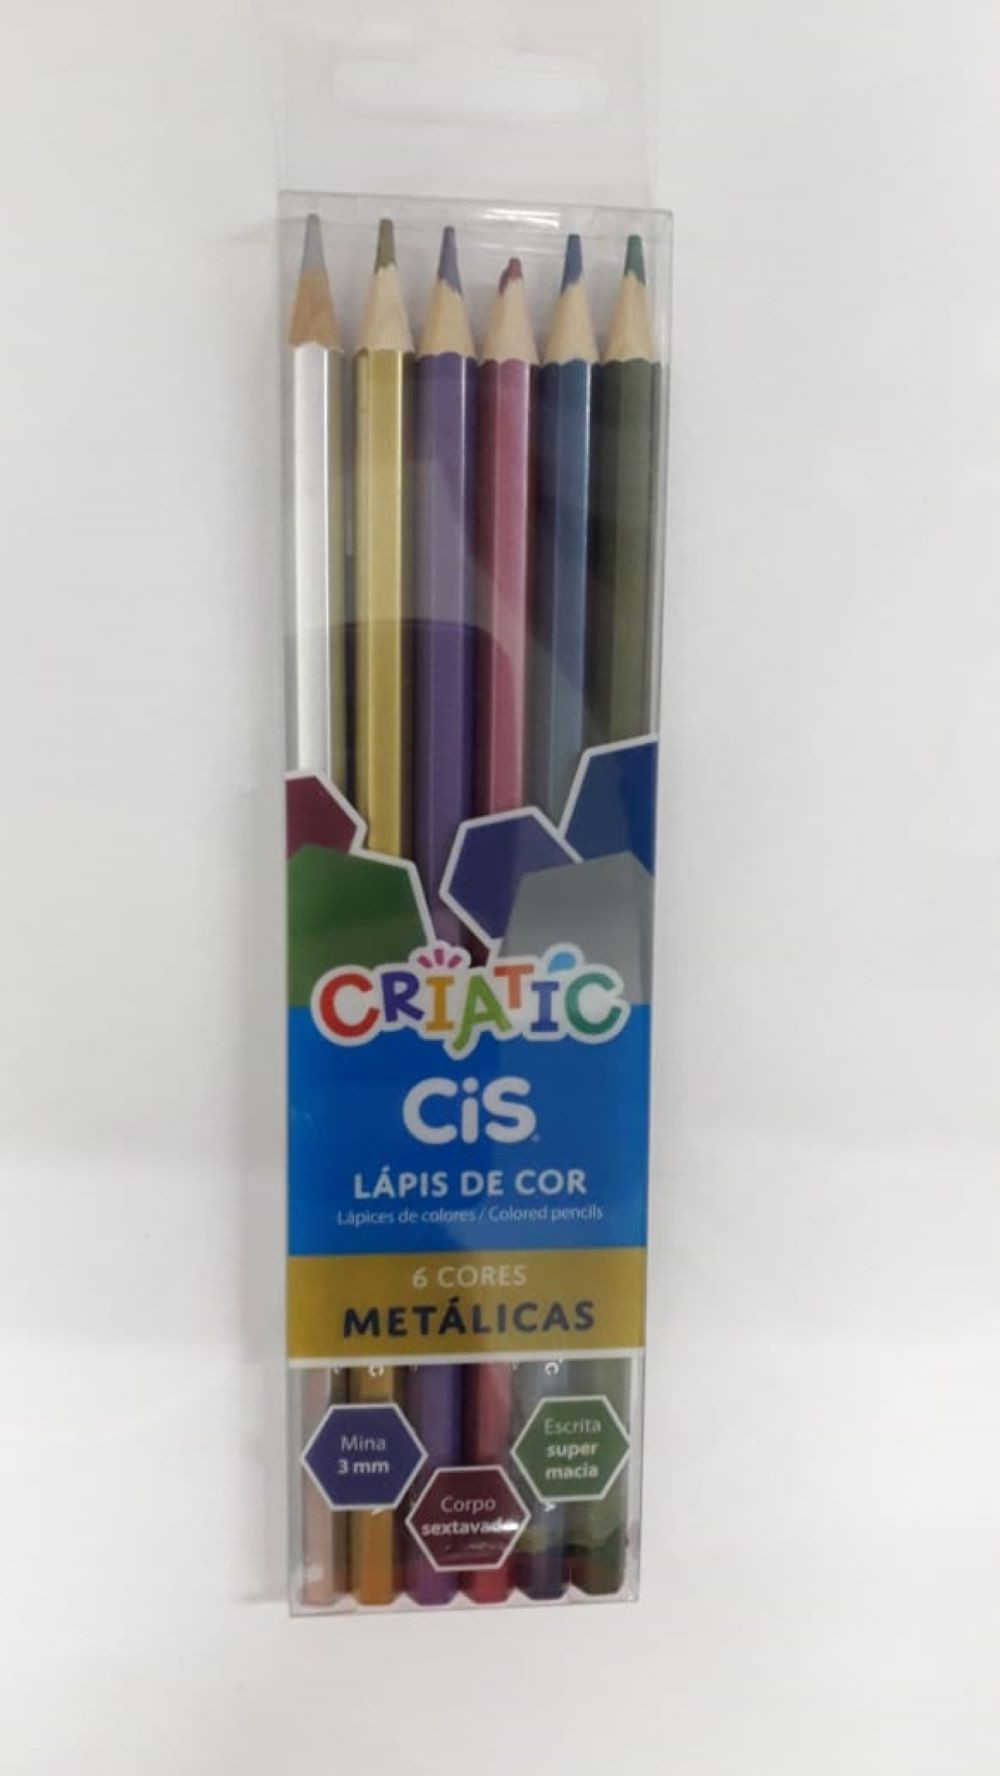 Lapis de Cor c/06 cores Metalico cis criatic